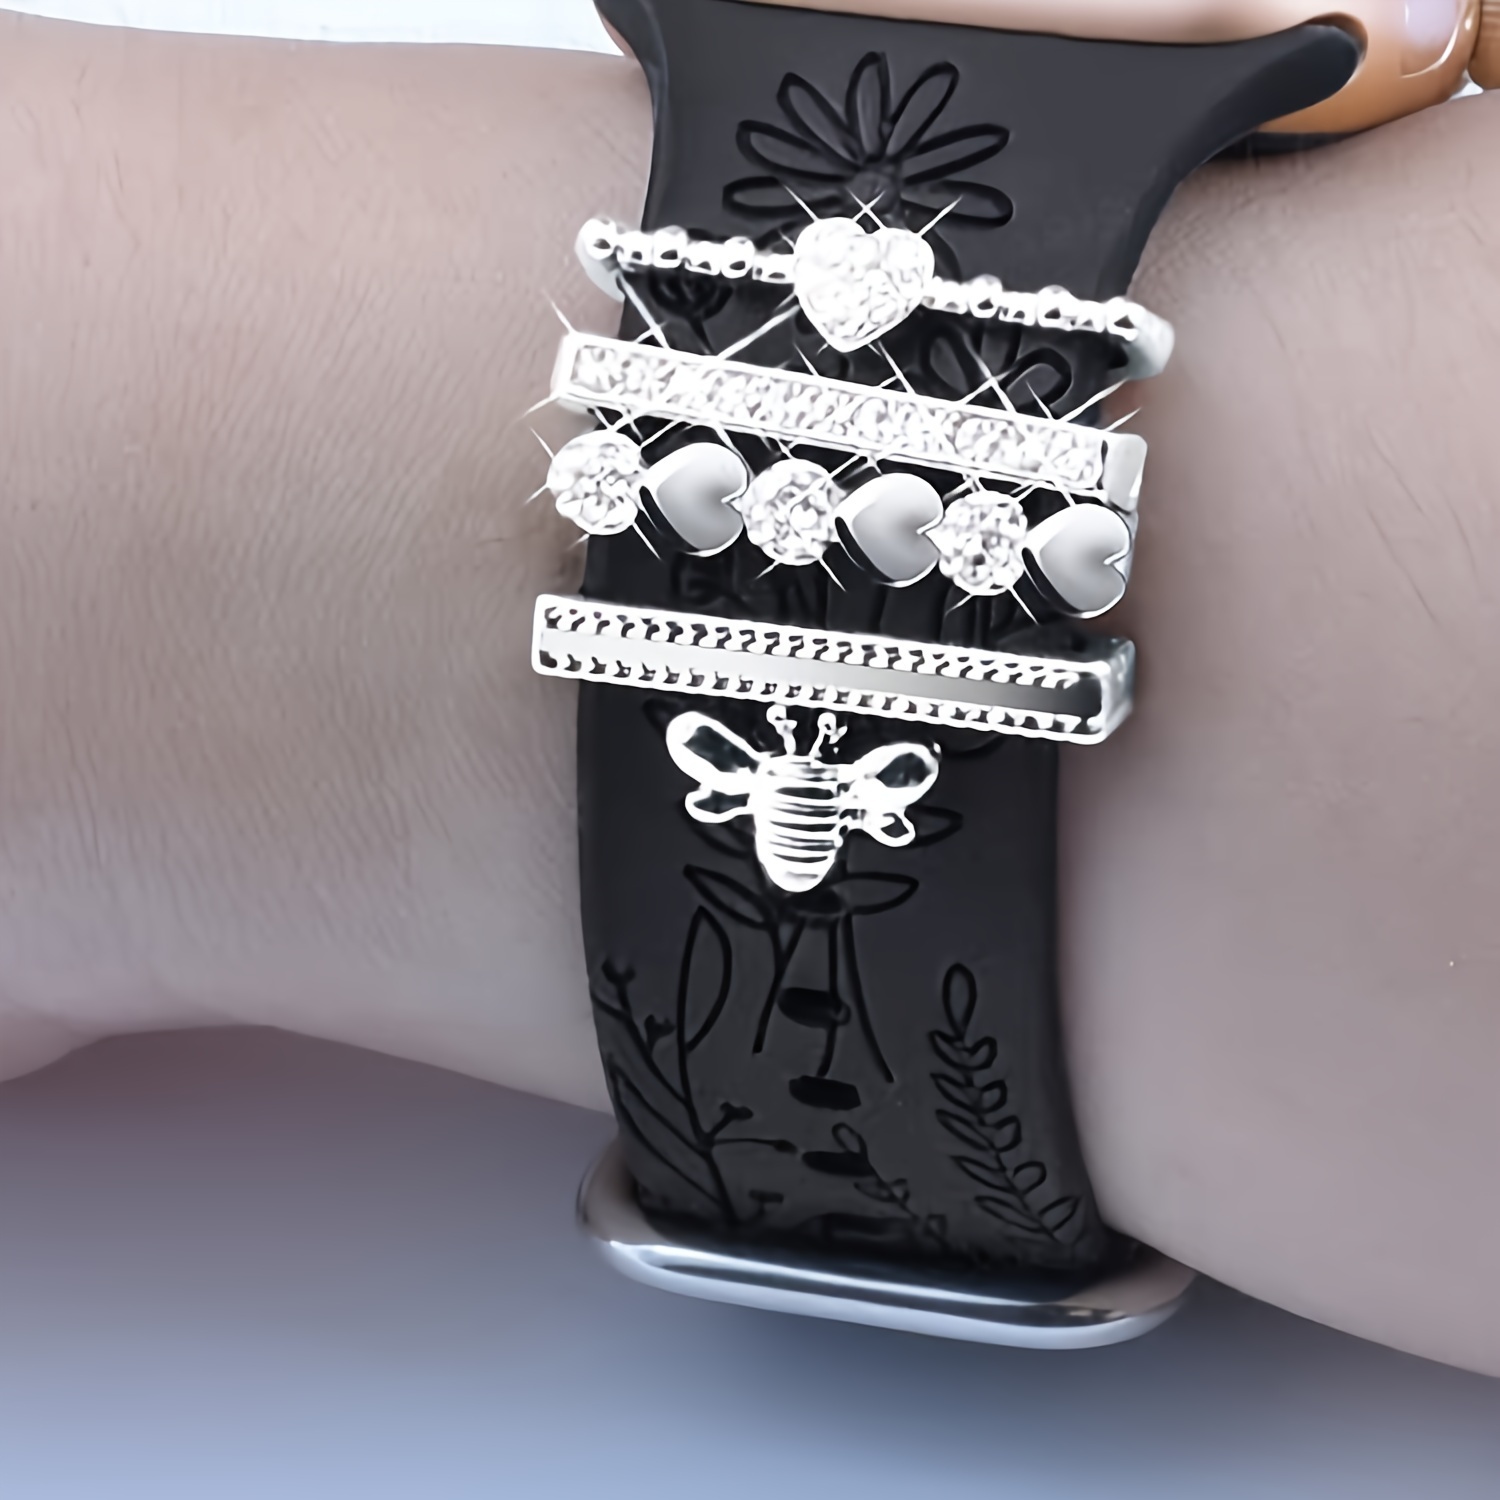 Accesorios de correa de silicona para reloj inteligente, anillo decorativo